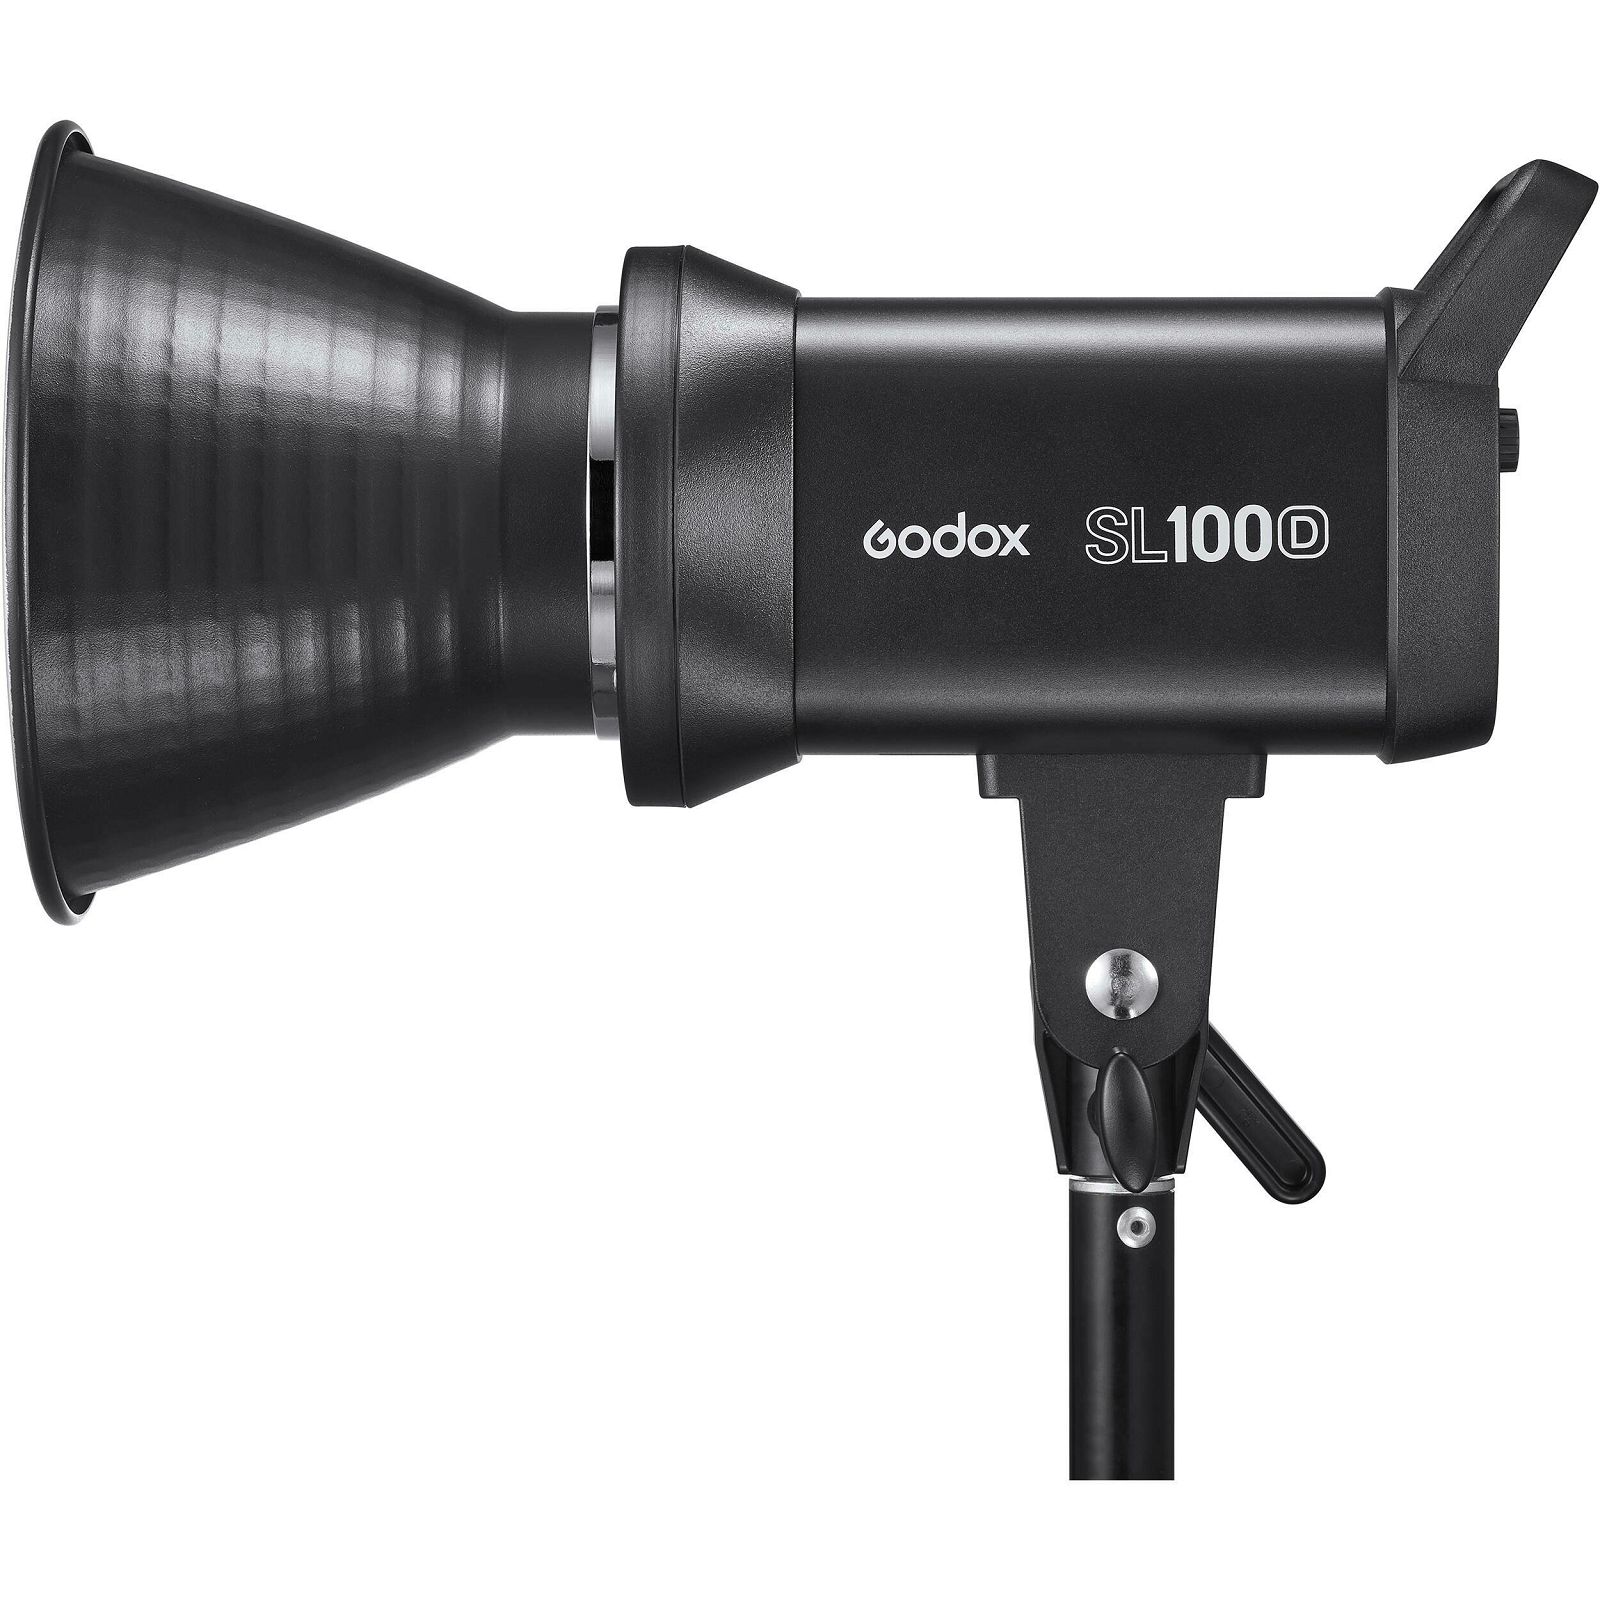 Godox SL-100D video light Daylight rasvjetno tijelo